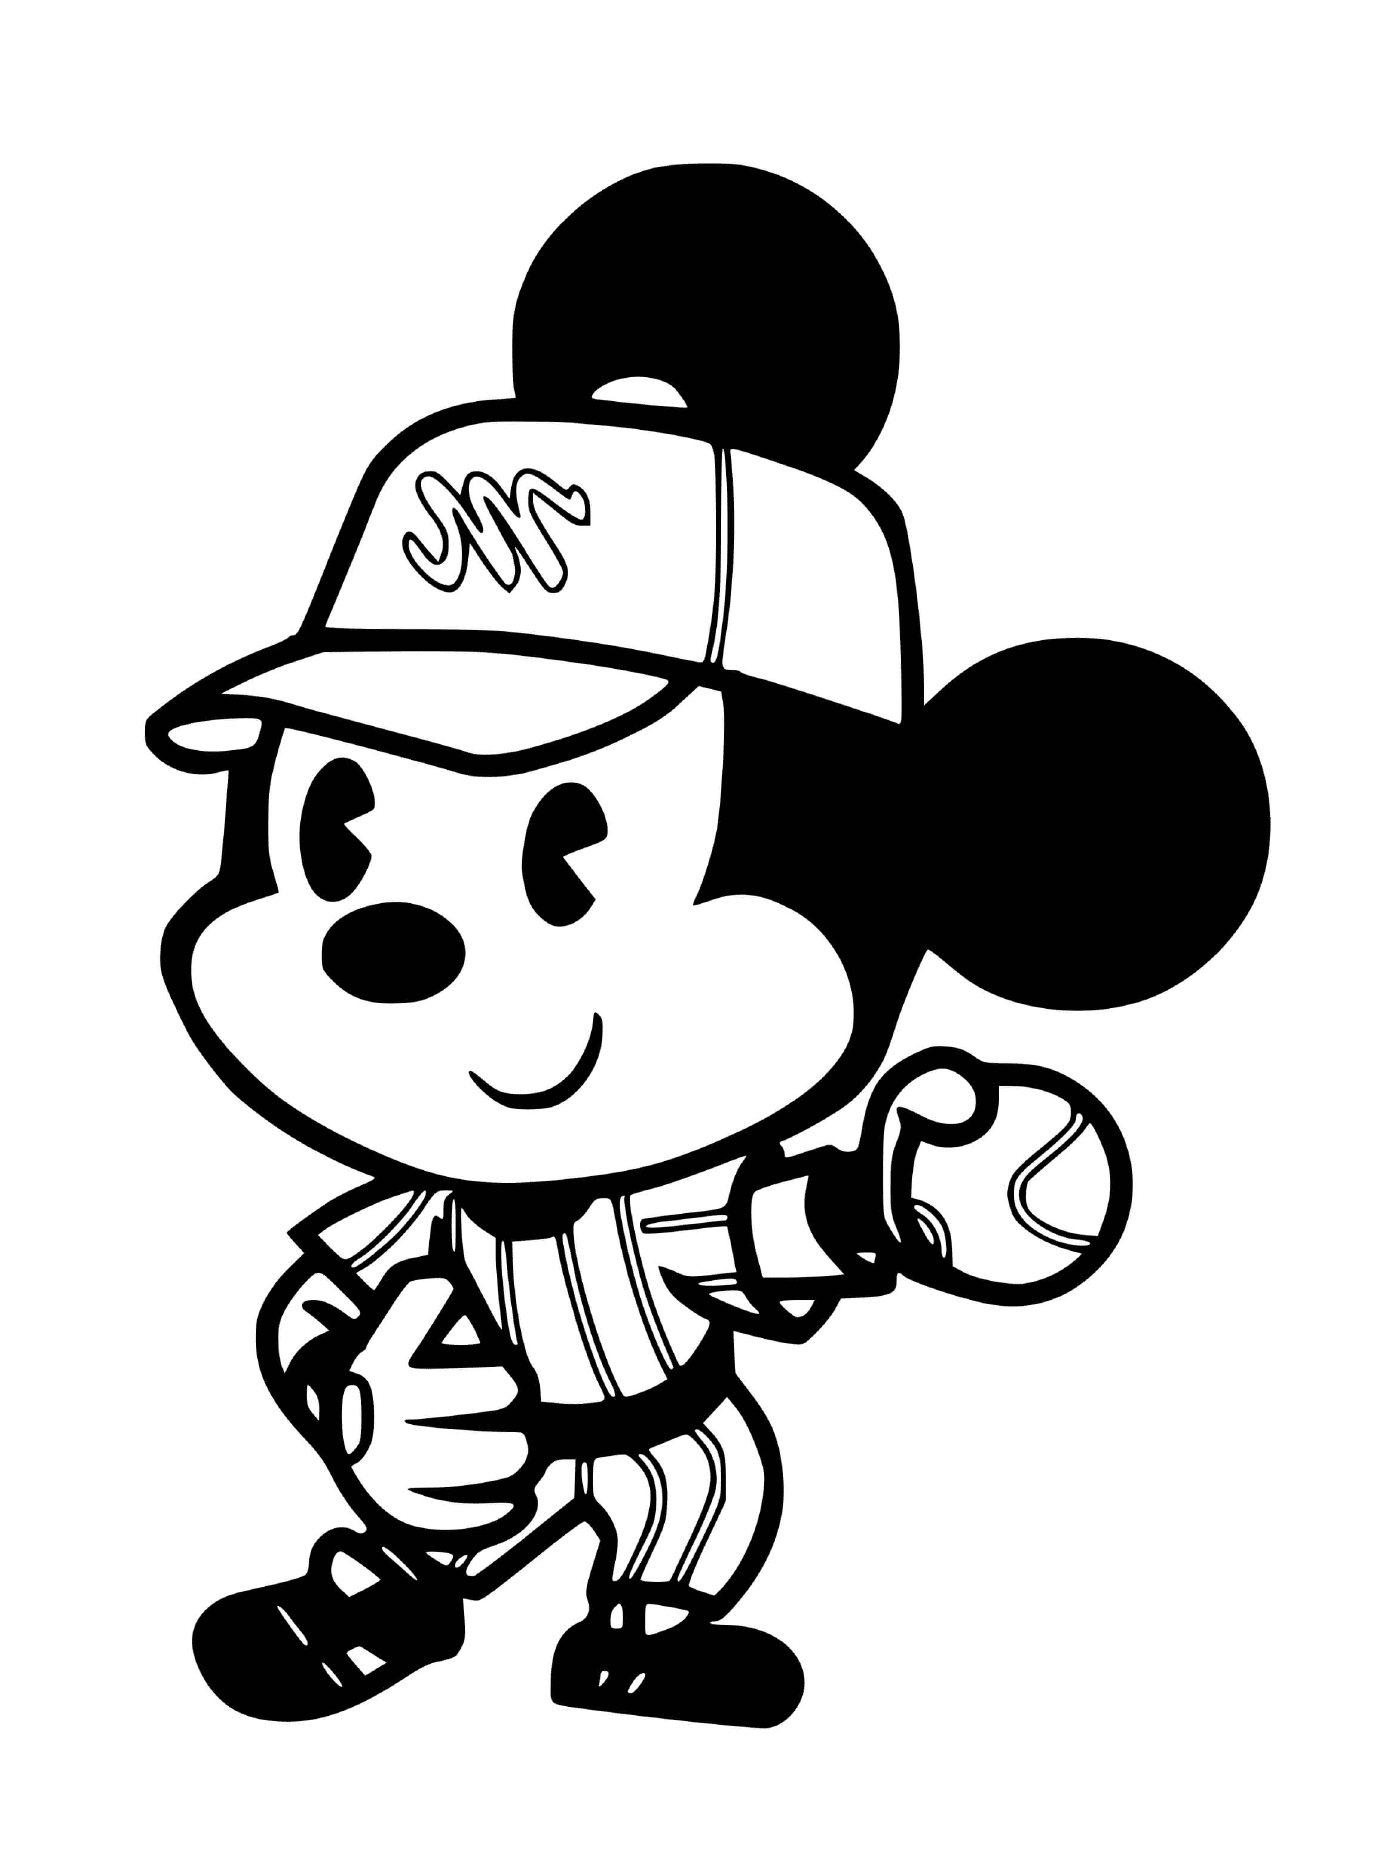  Mickey Mouse juega béisbol 